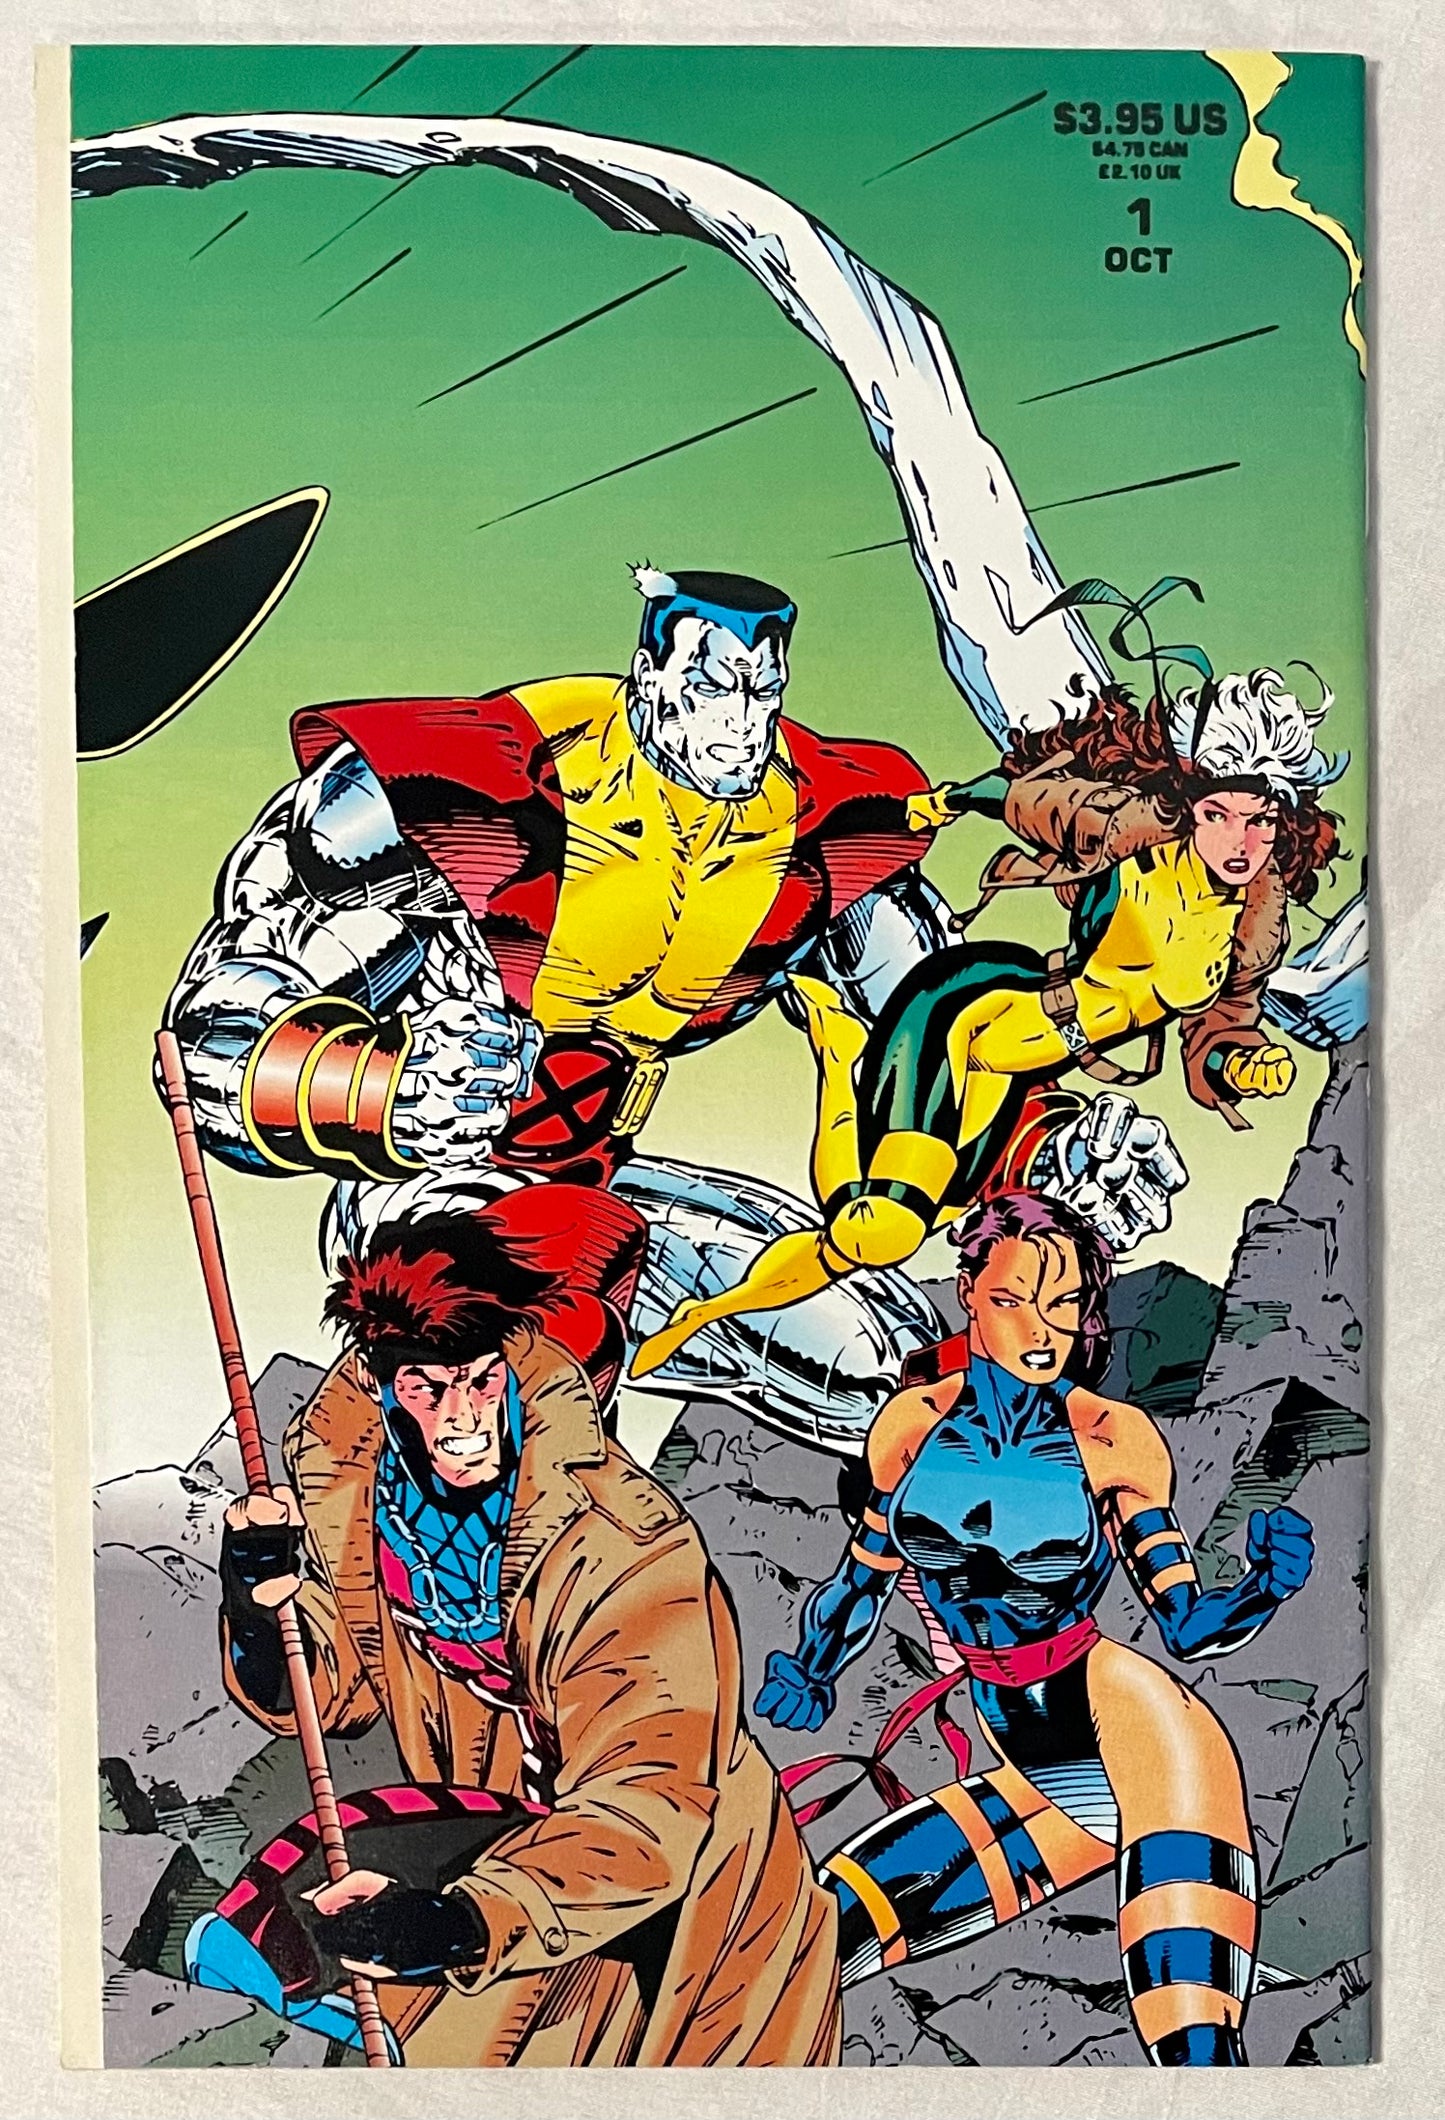 Marvel Comics X-MEN #1 (1991) Wrap around cover